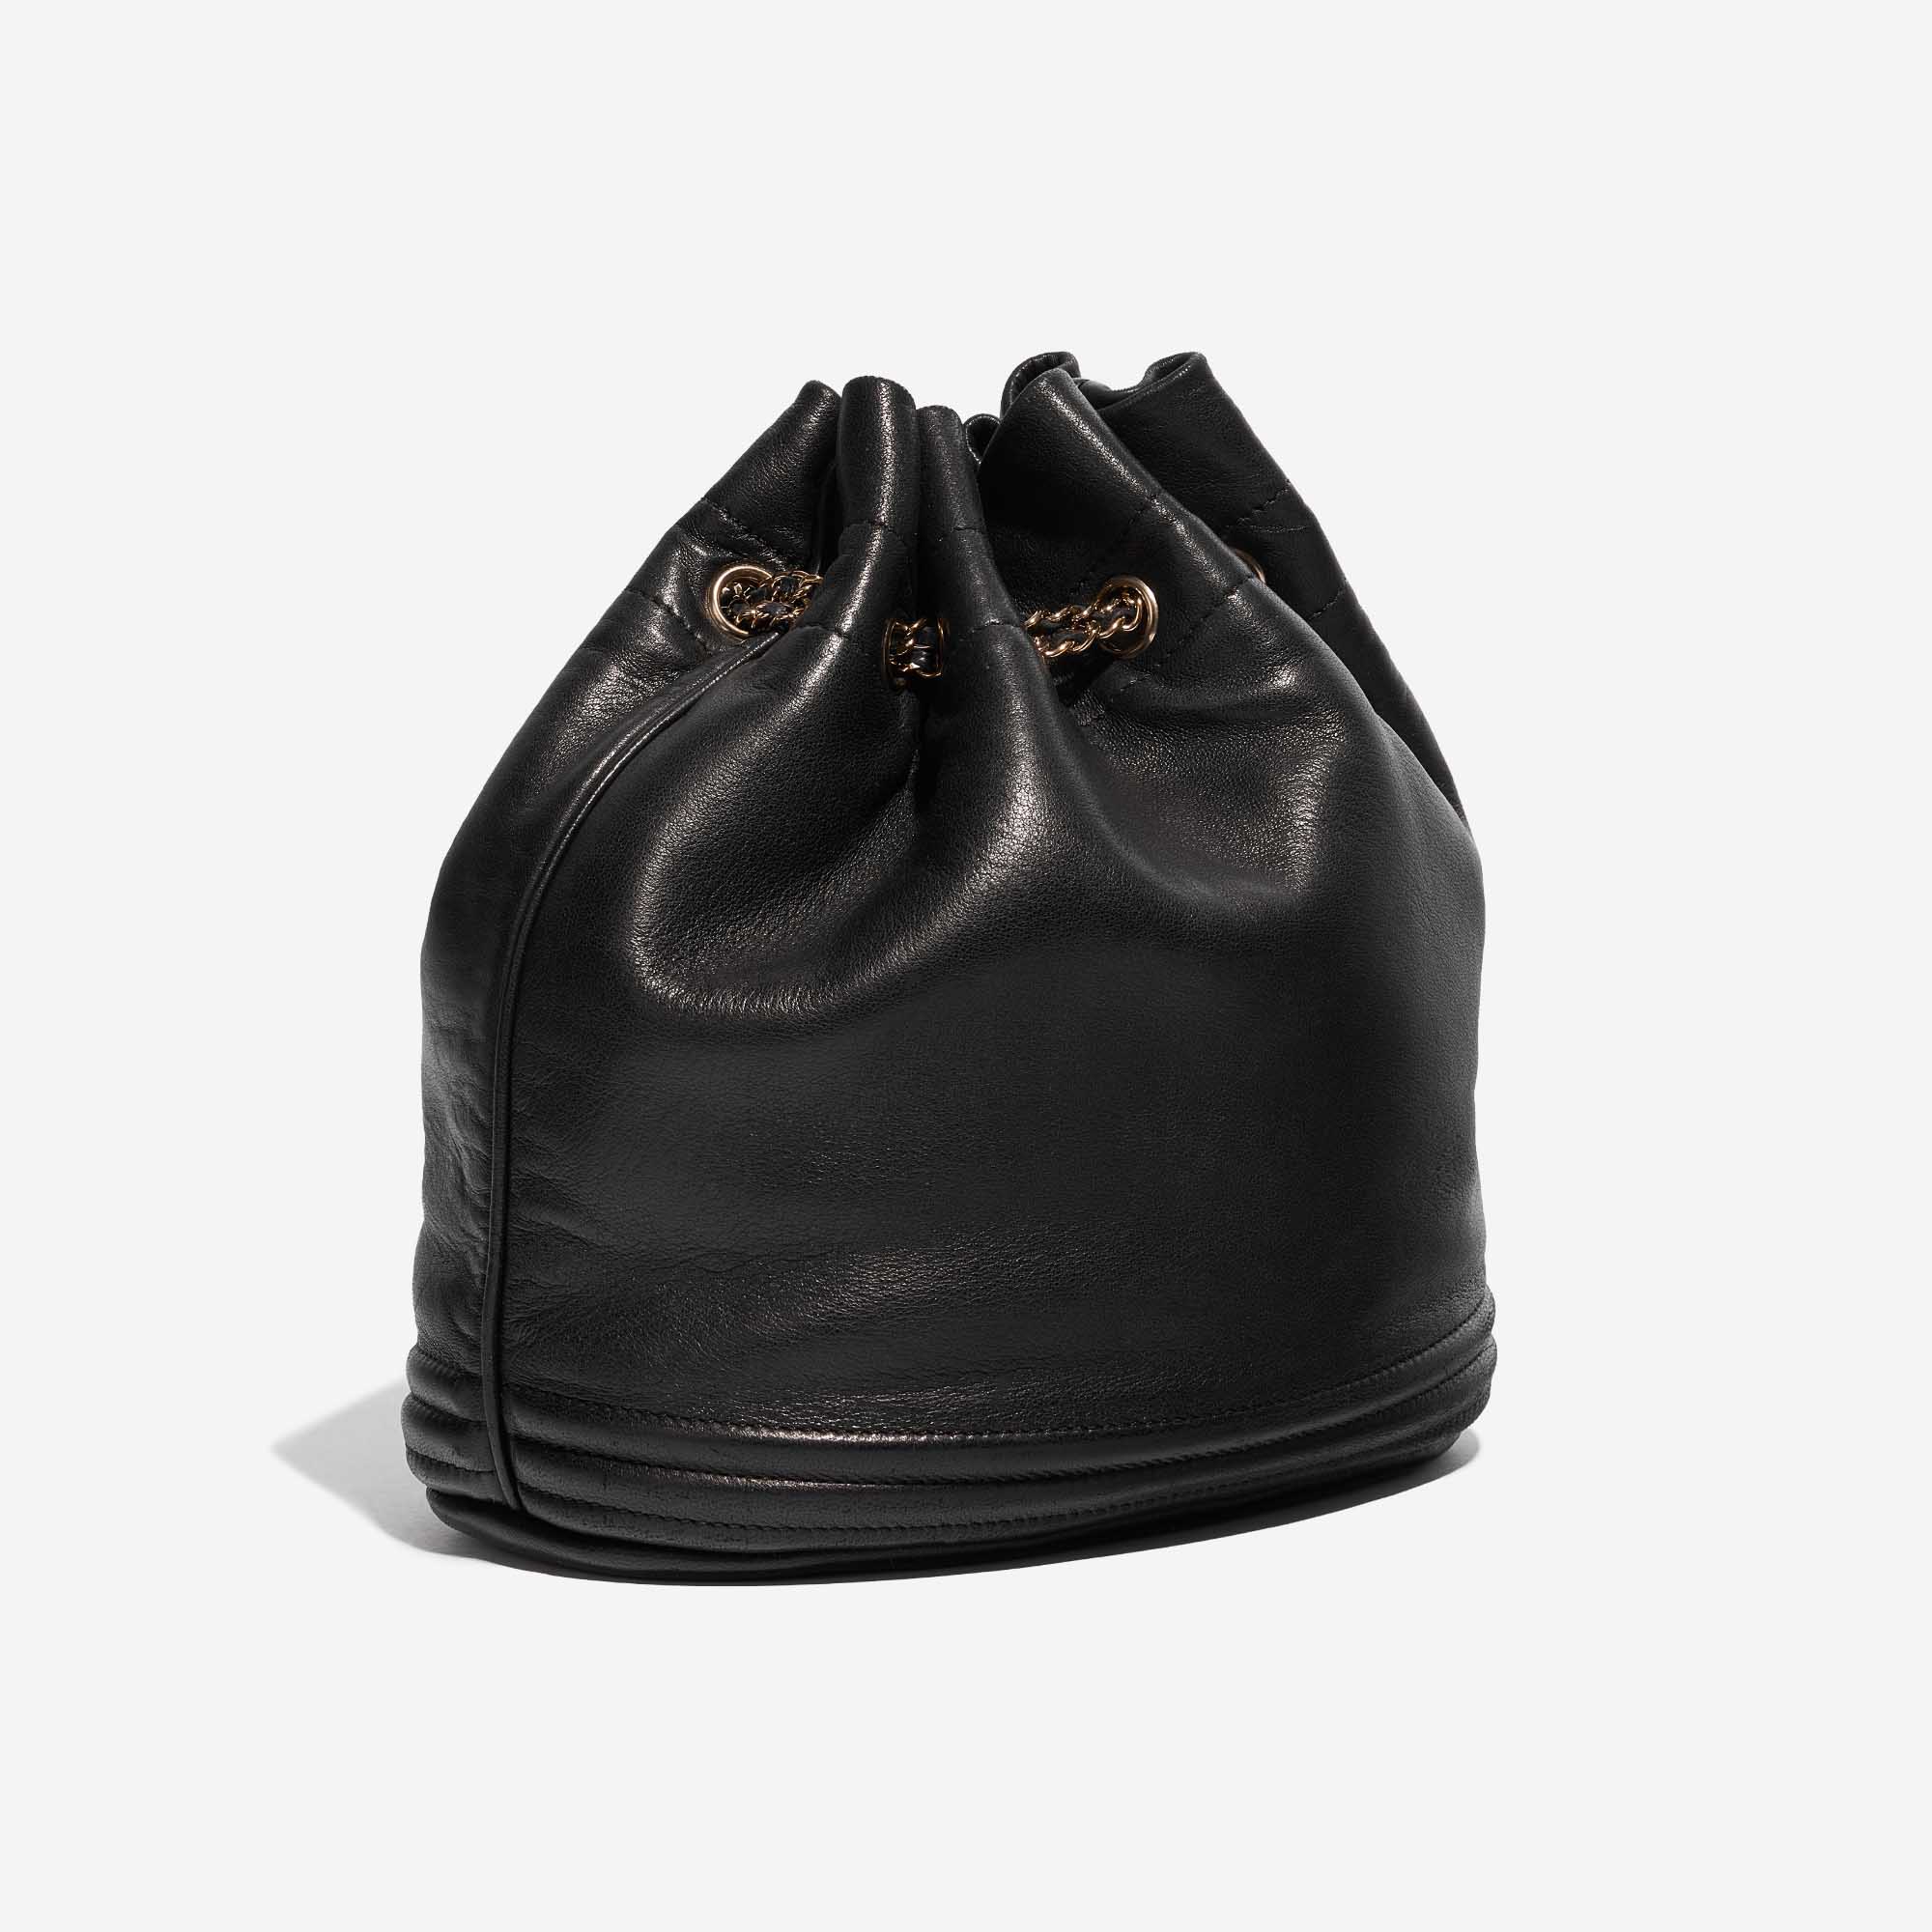 Sac Chanel d'occasion Cordon Bucket Agneau Noir Côté Noir Devant Vendez votre sac de créateur sur Saclab.com